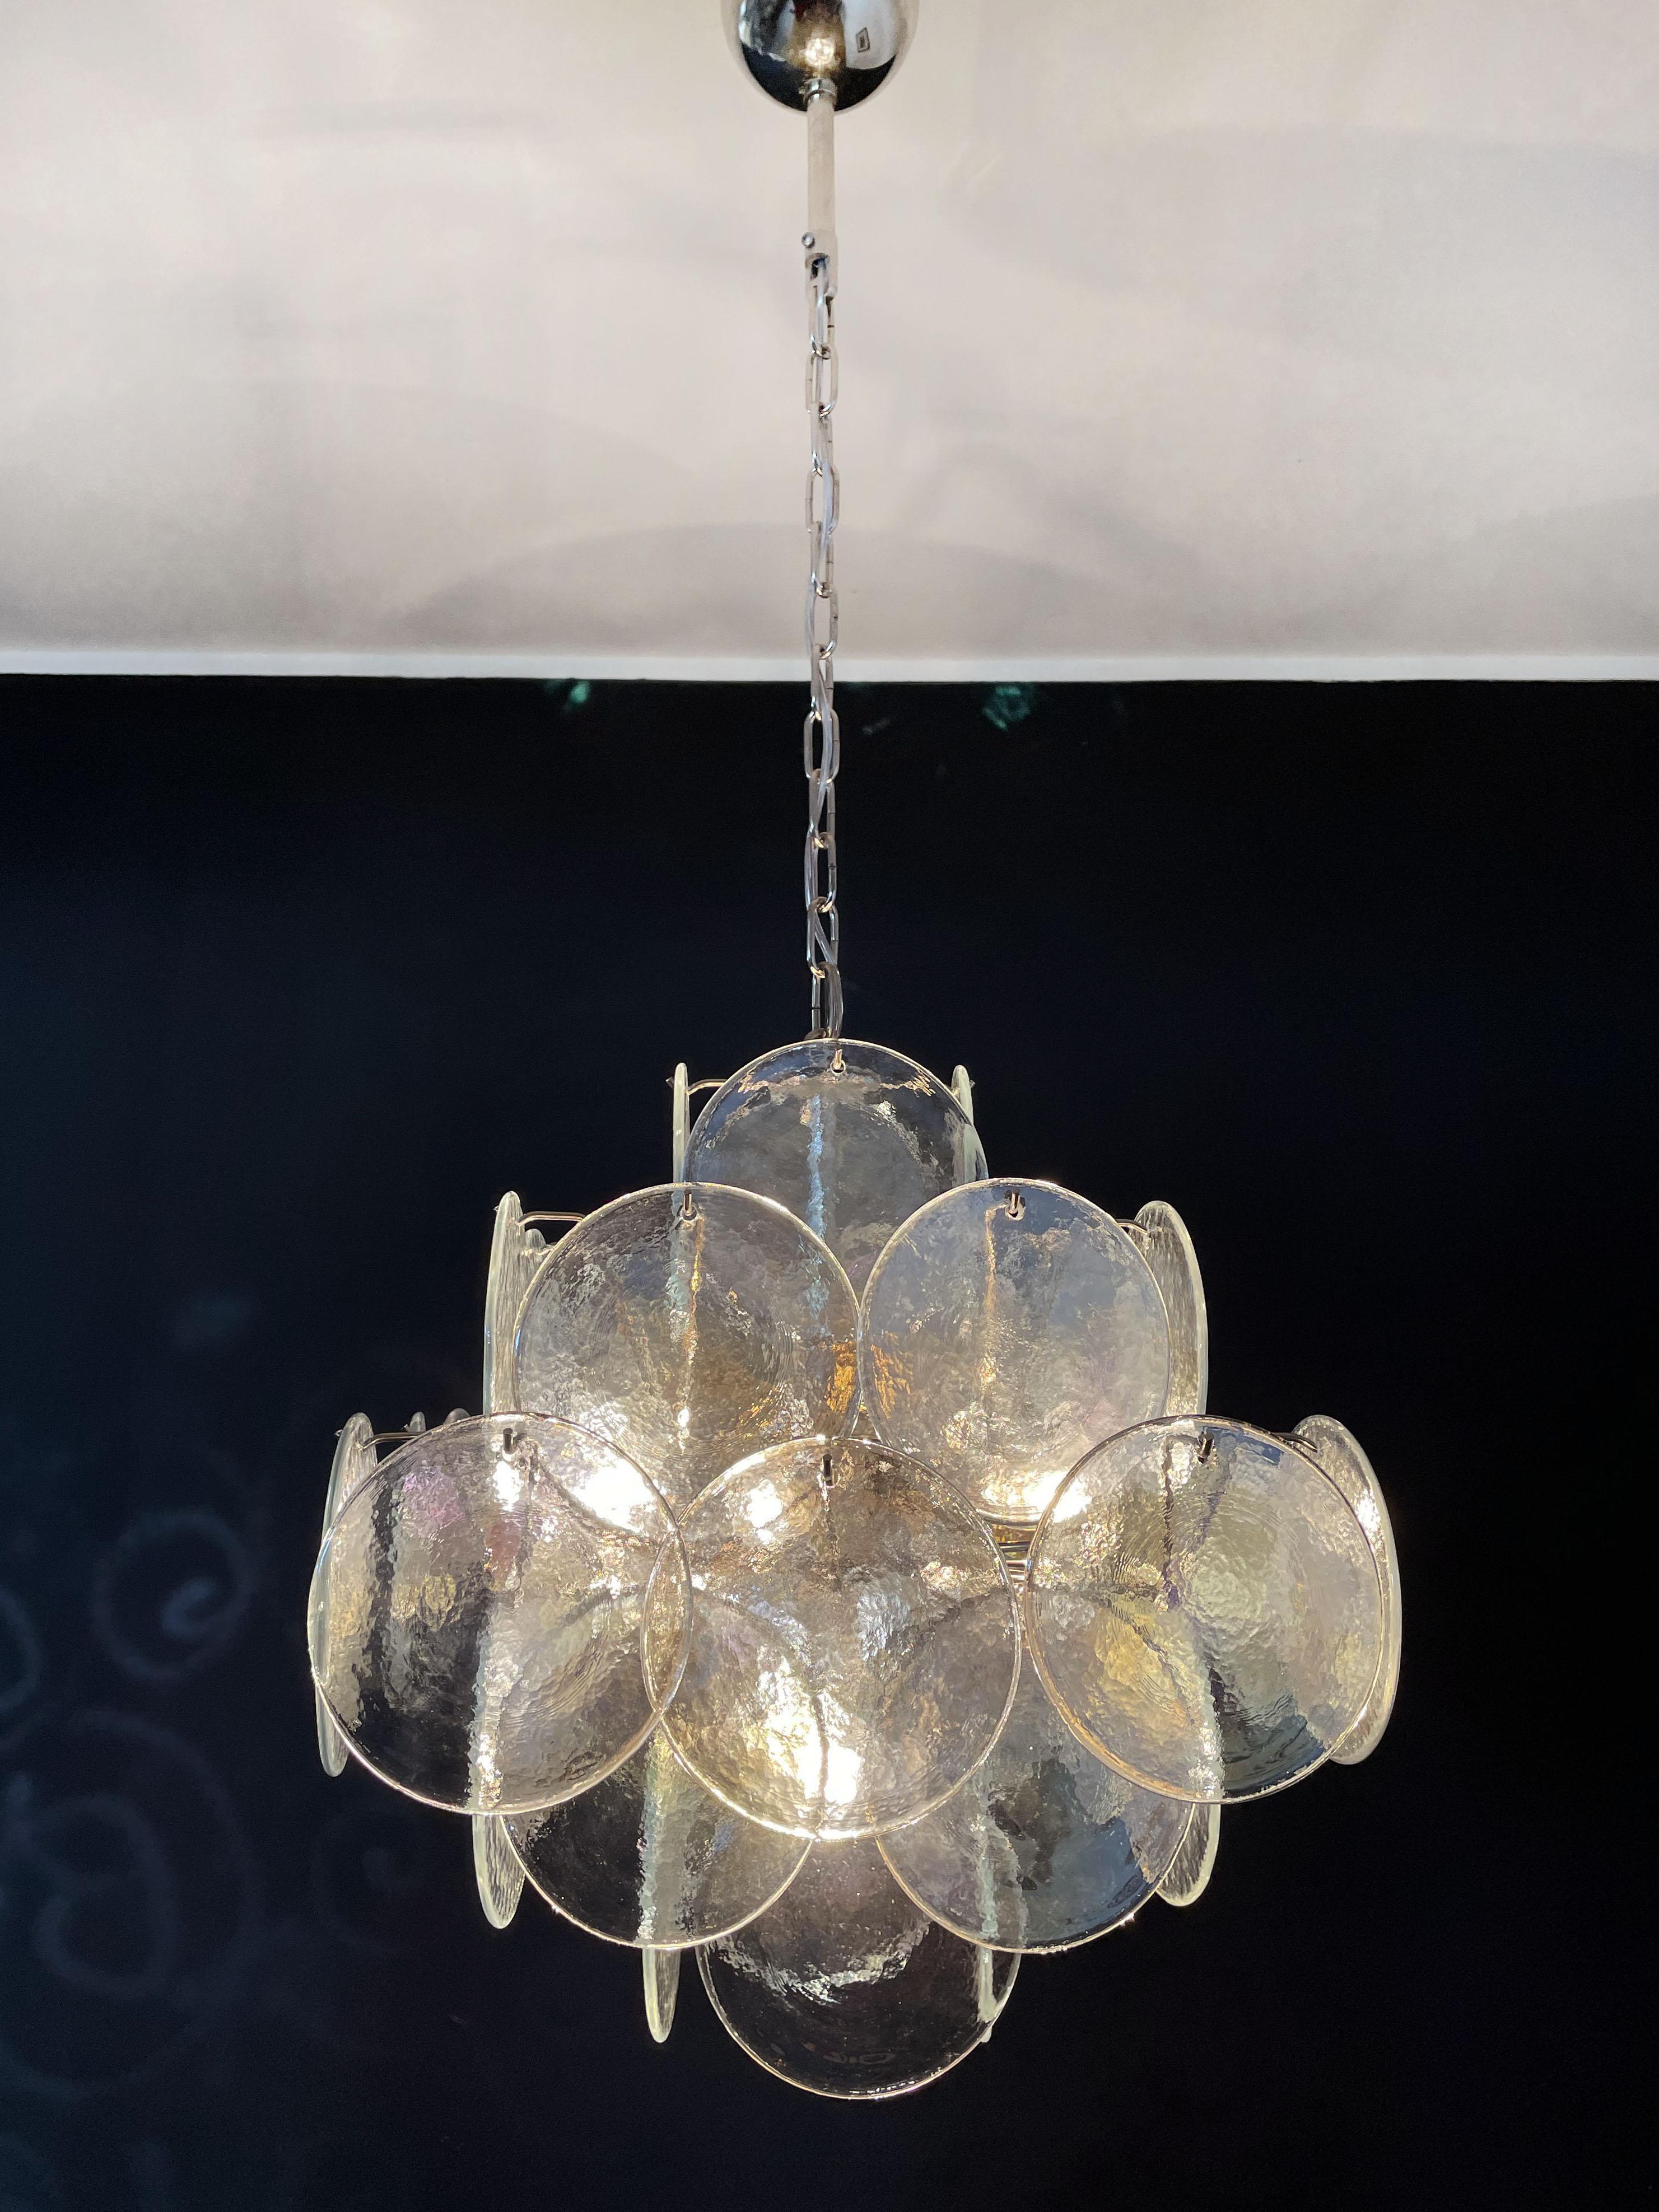 Vintage Italian Murano chandelier - 36 iridescent disks For Sale 2